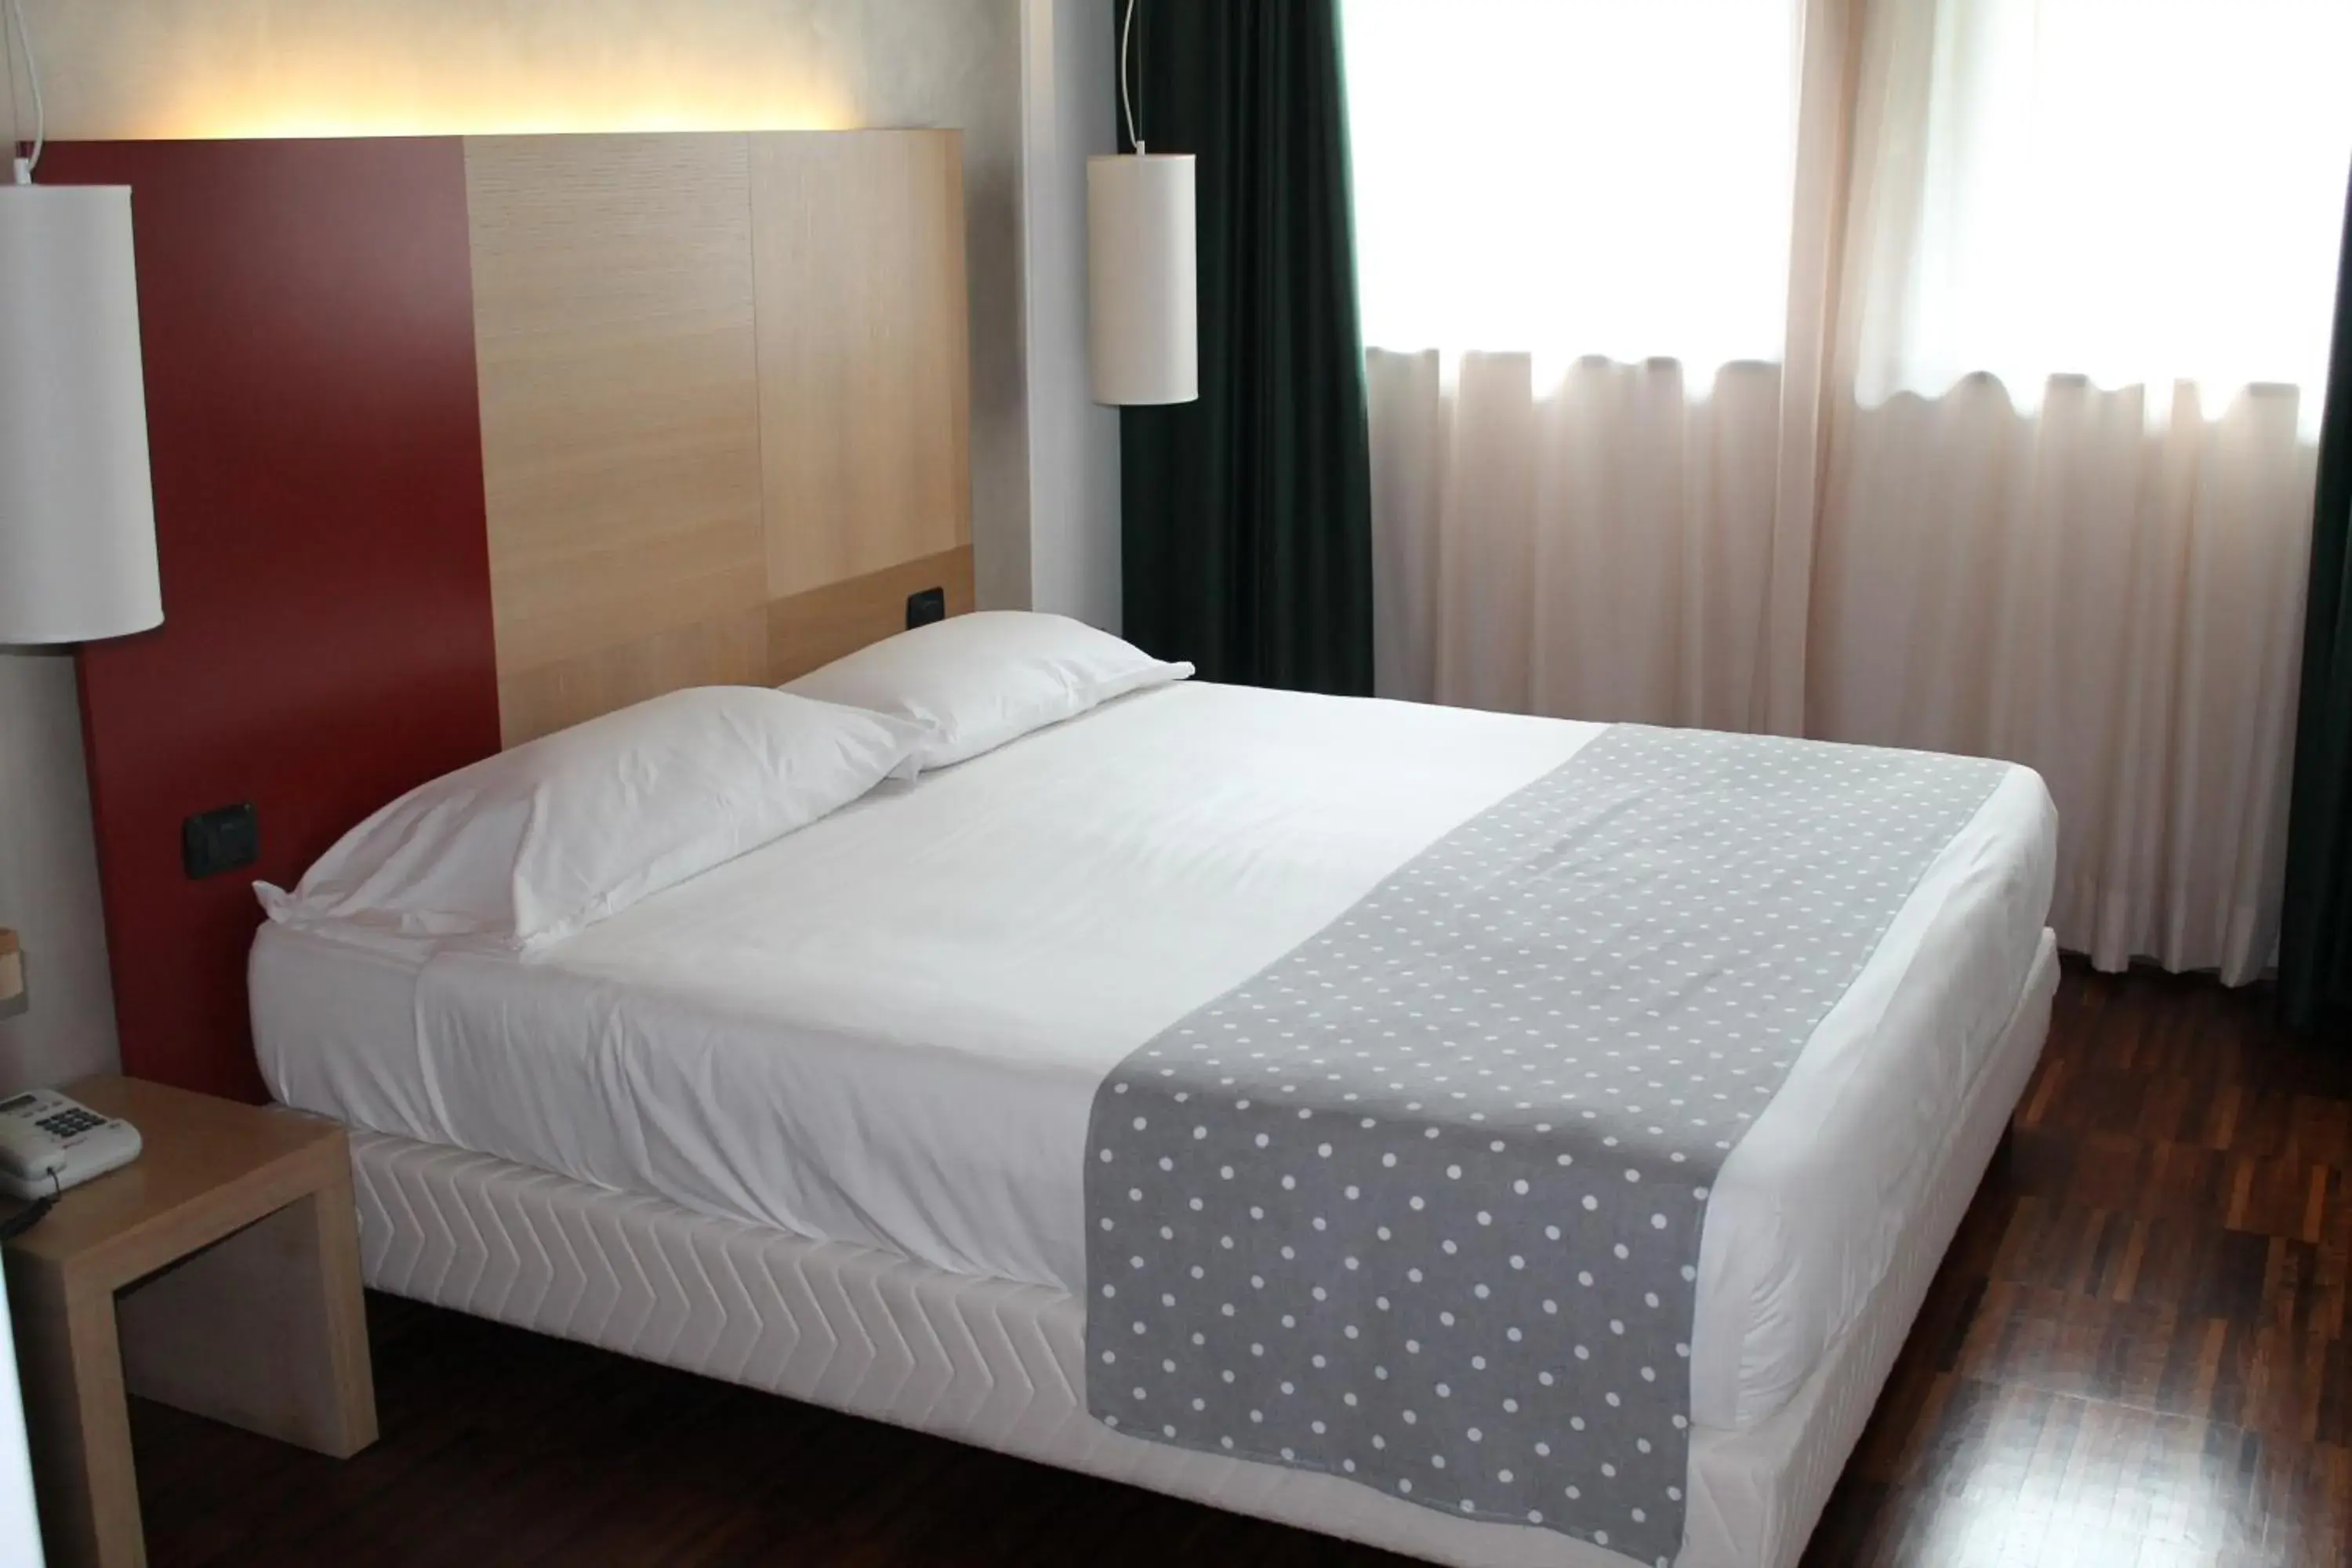 Bed, Room Photo in Cascina Scova Resort